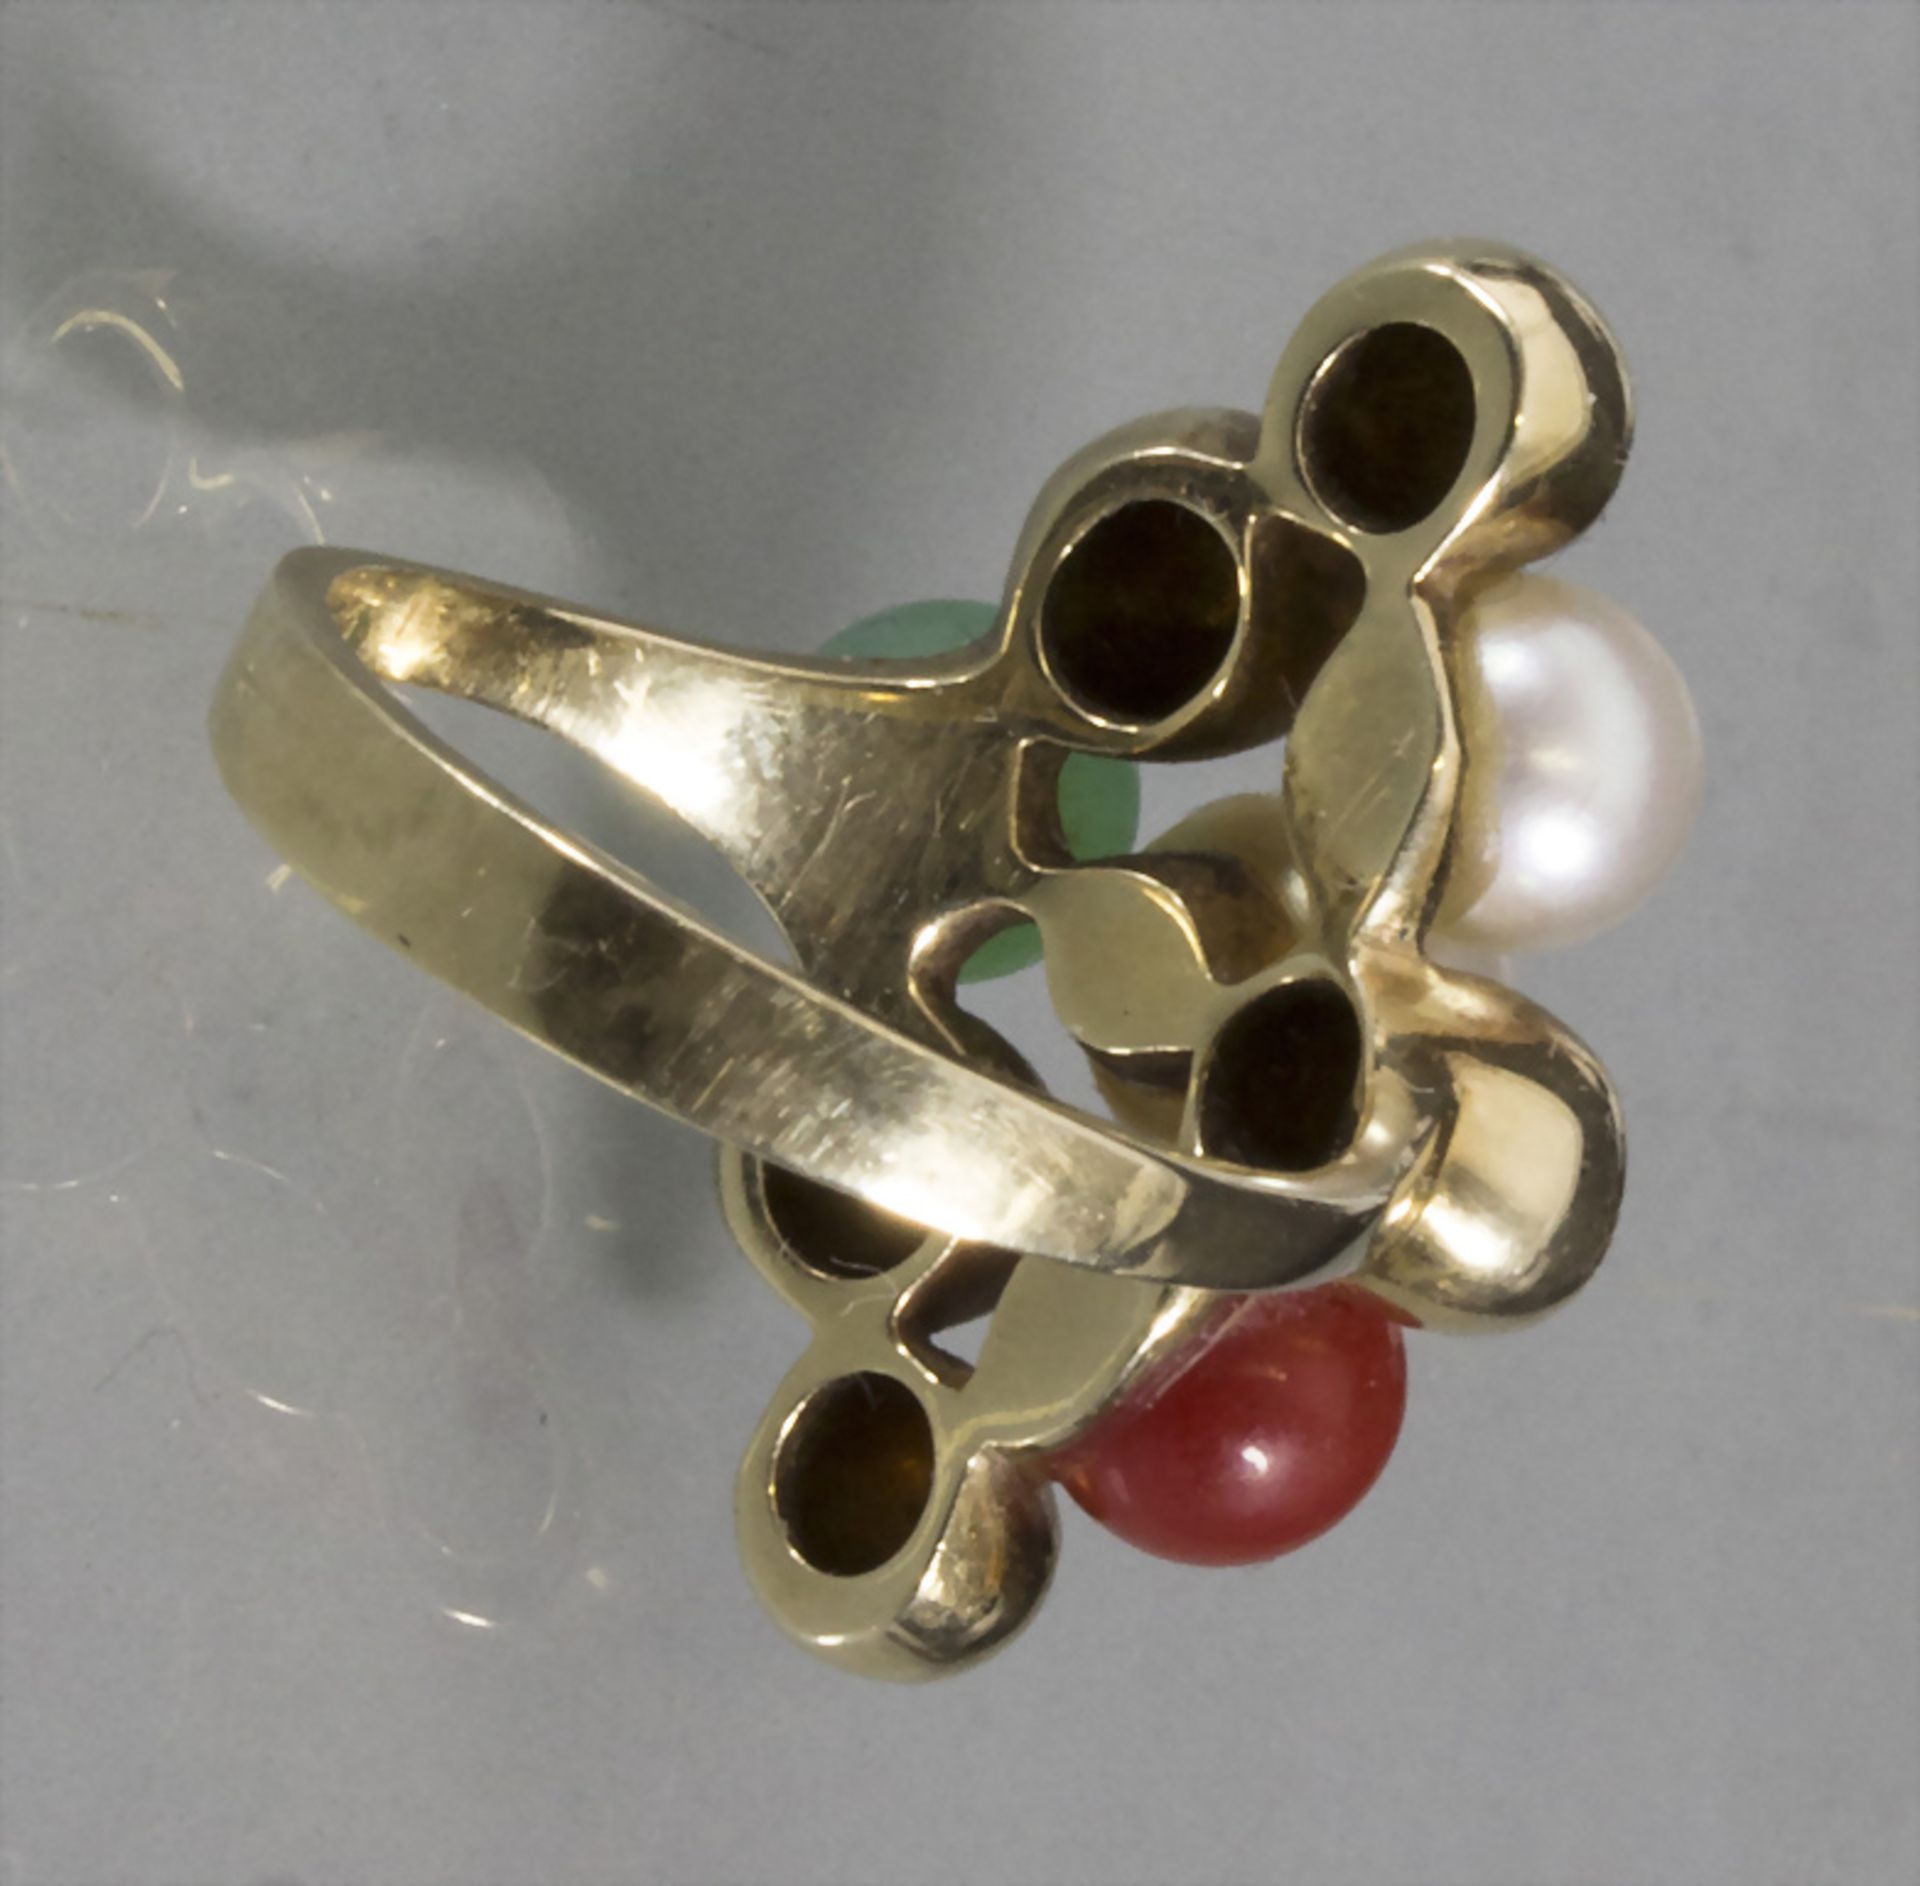 Damenring / A ladies 14ct gold ring, um 1970 - Image 2 of 2